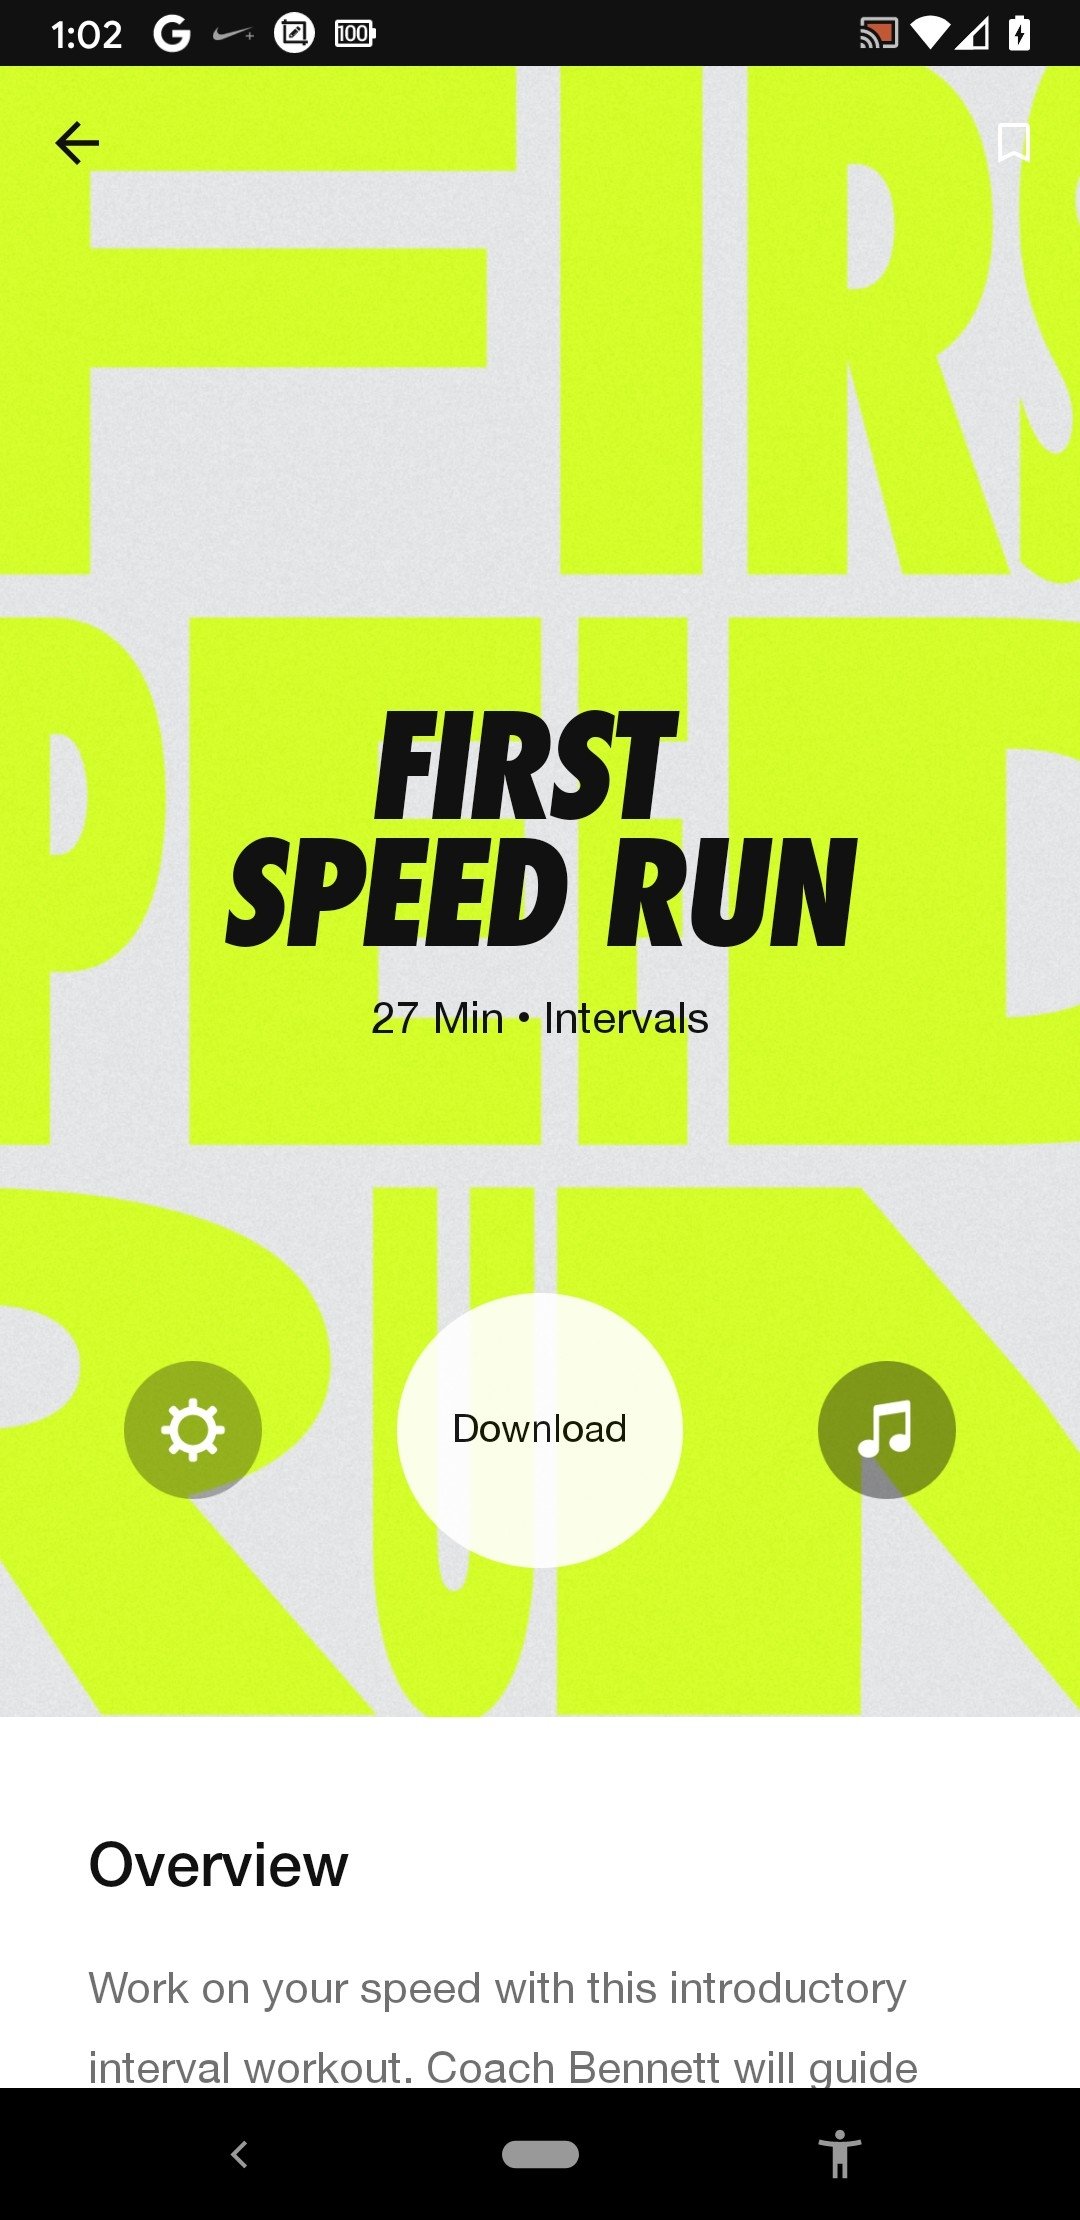 arrojar polvo en los ojos estilo Empuje hacia abajo Nike+ Run Club 4.11.0 - Descargar para Android APK Gratis